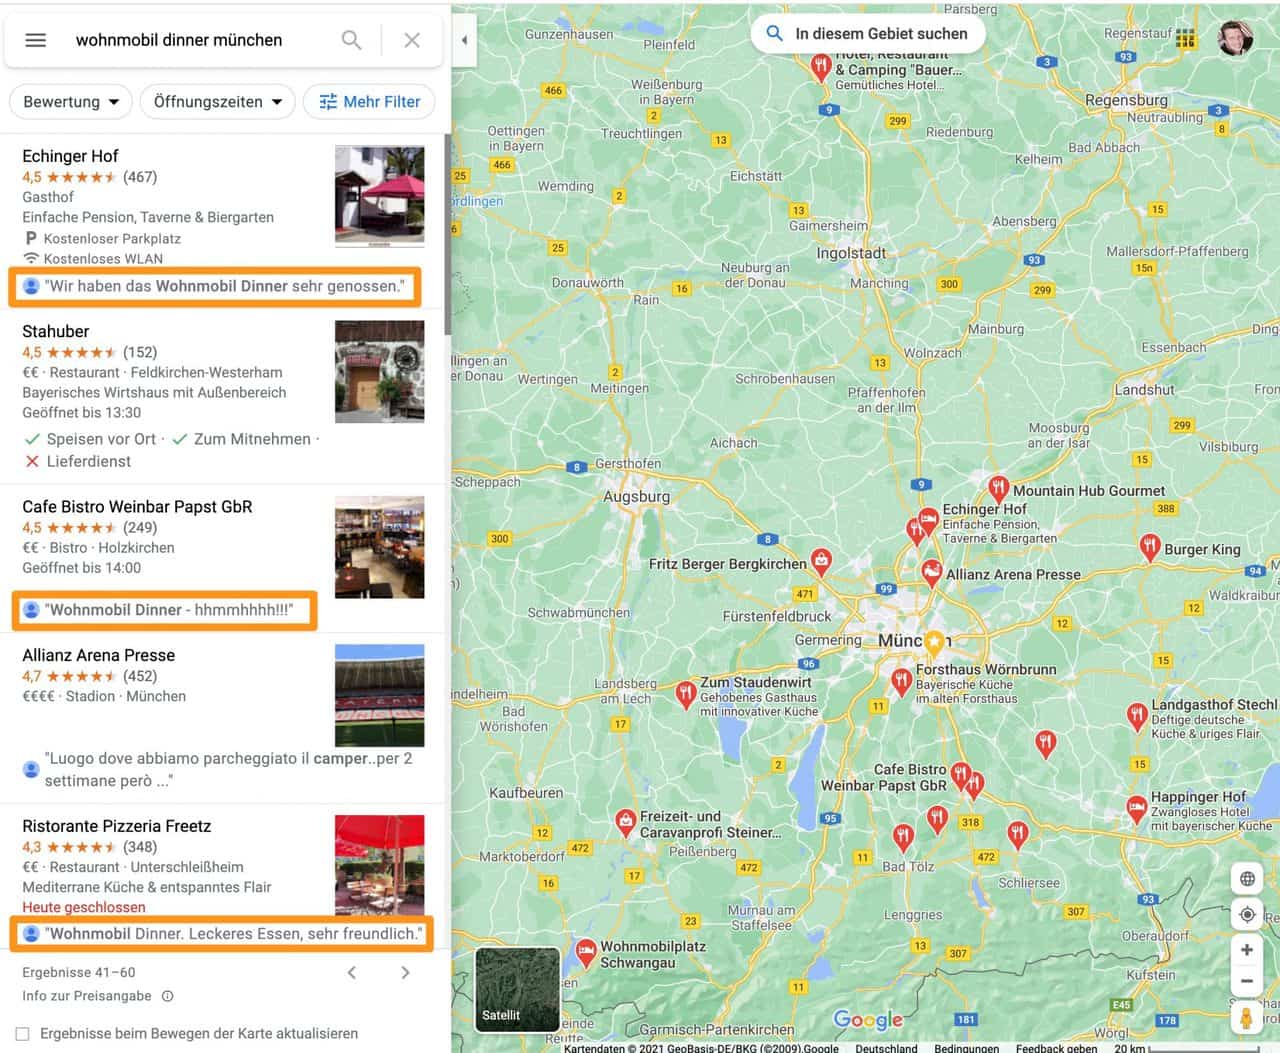 Wohnmobi-Dinner-suchen-und-finden-über-Google-Maps